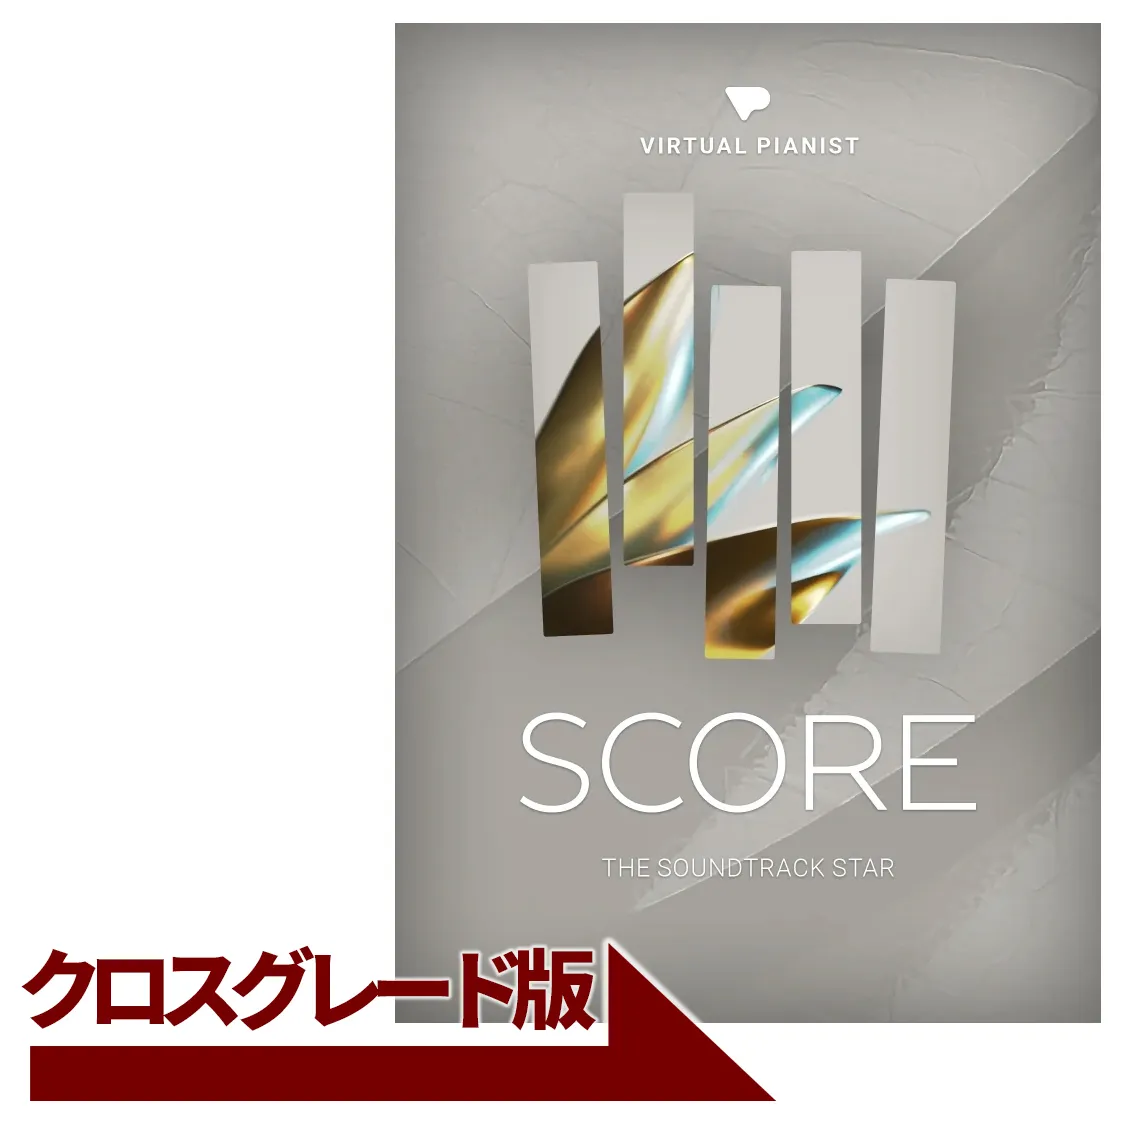 Virtual Pianist SCORE クロスグレード